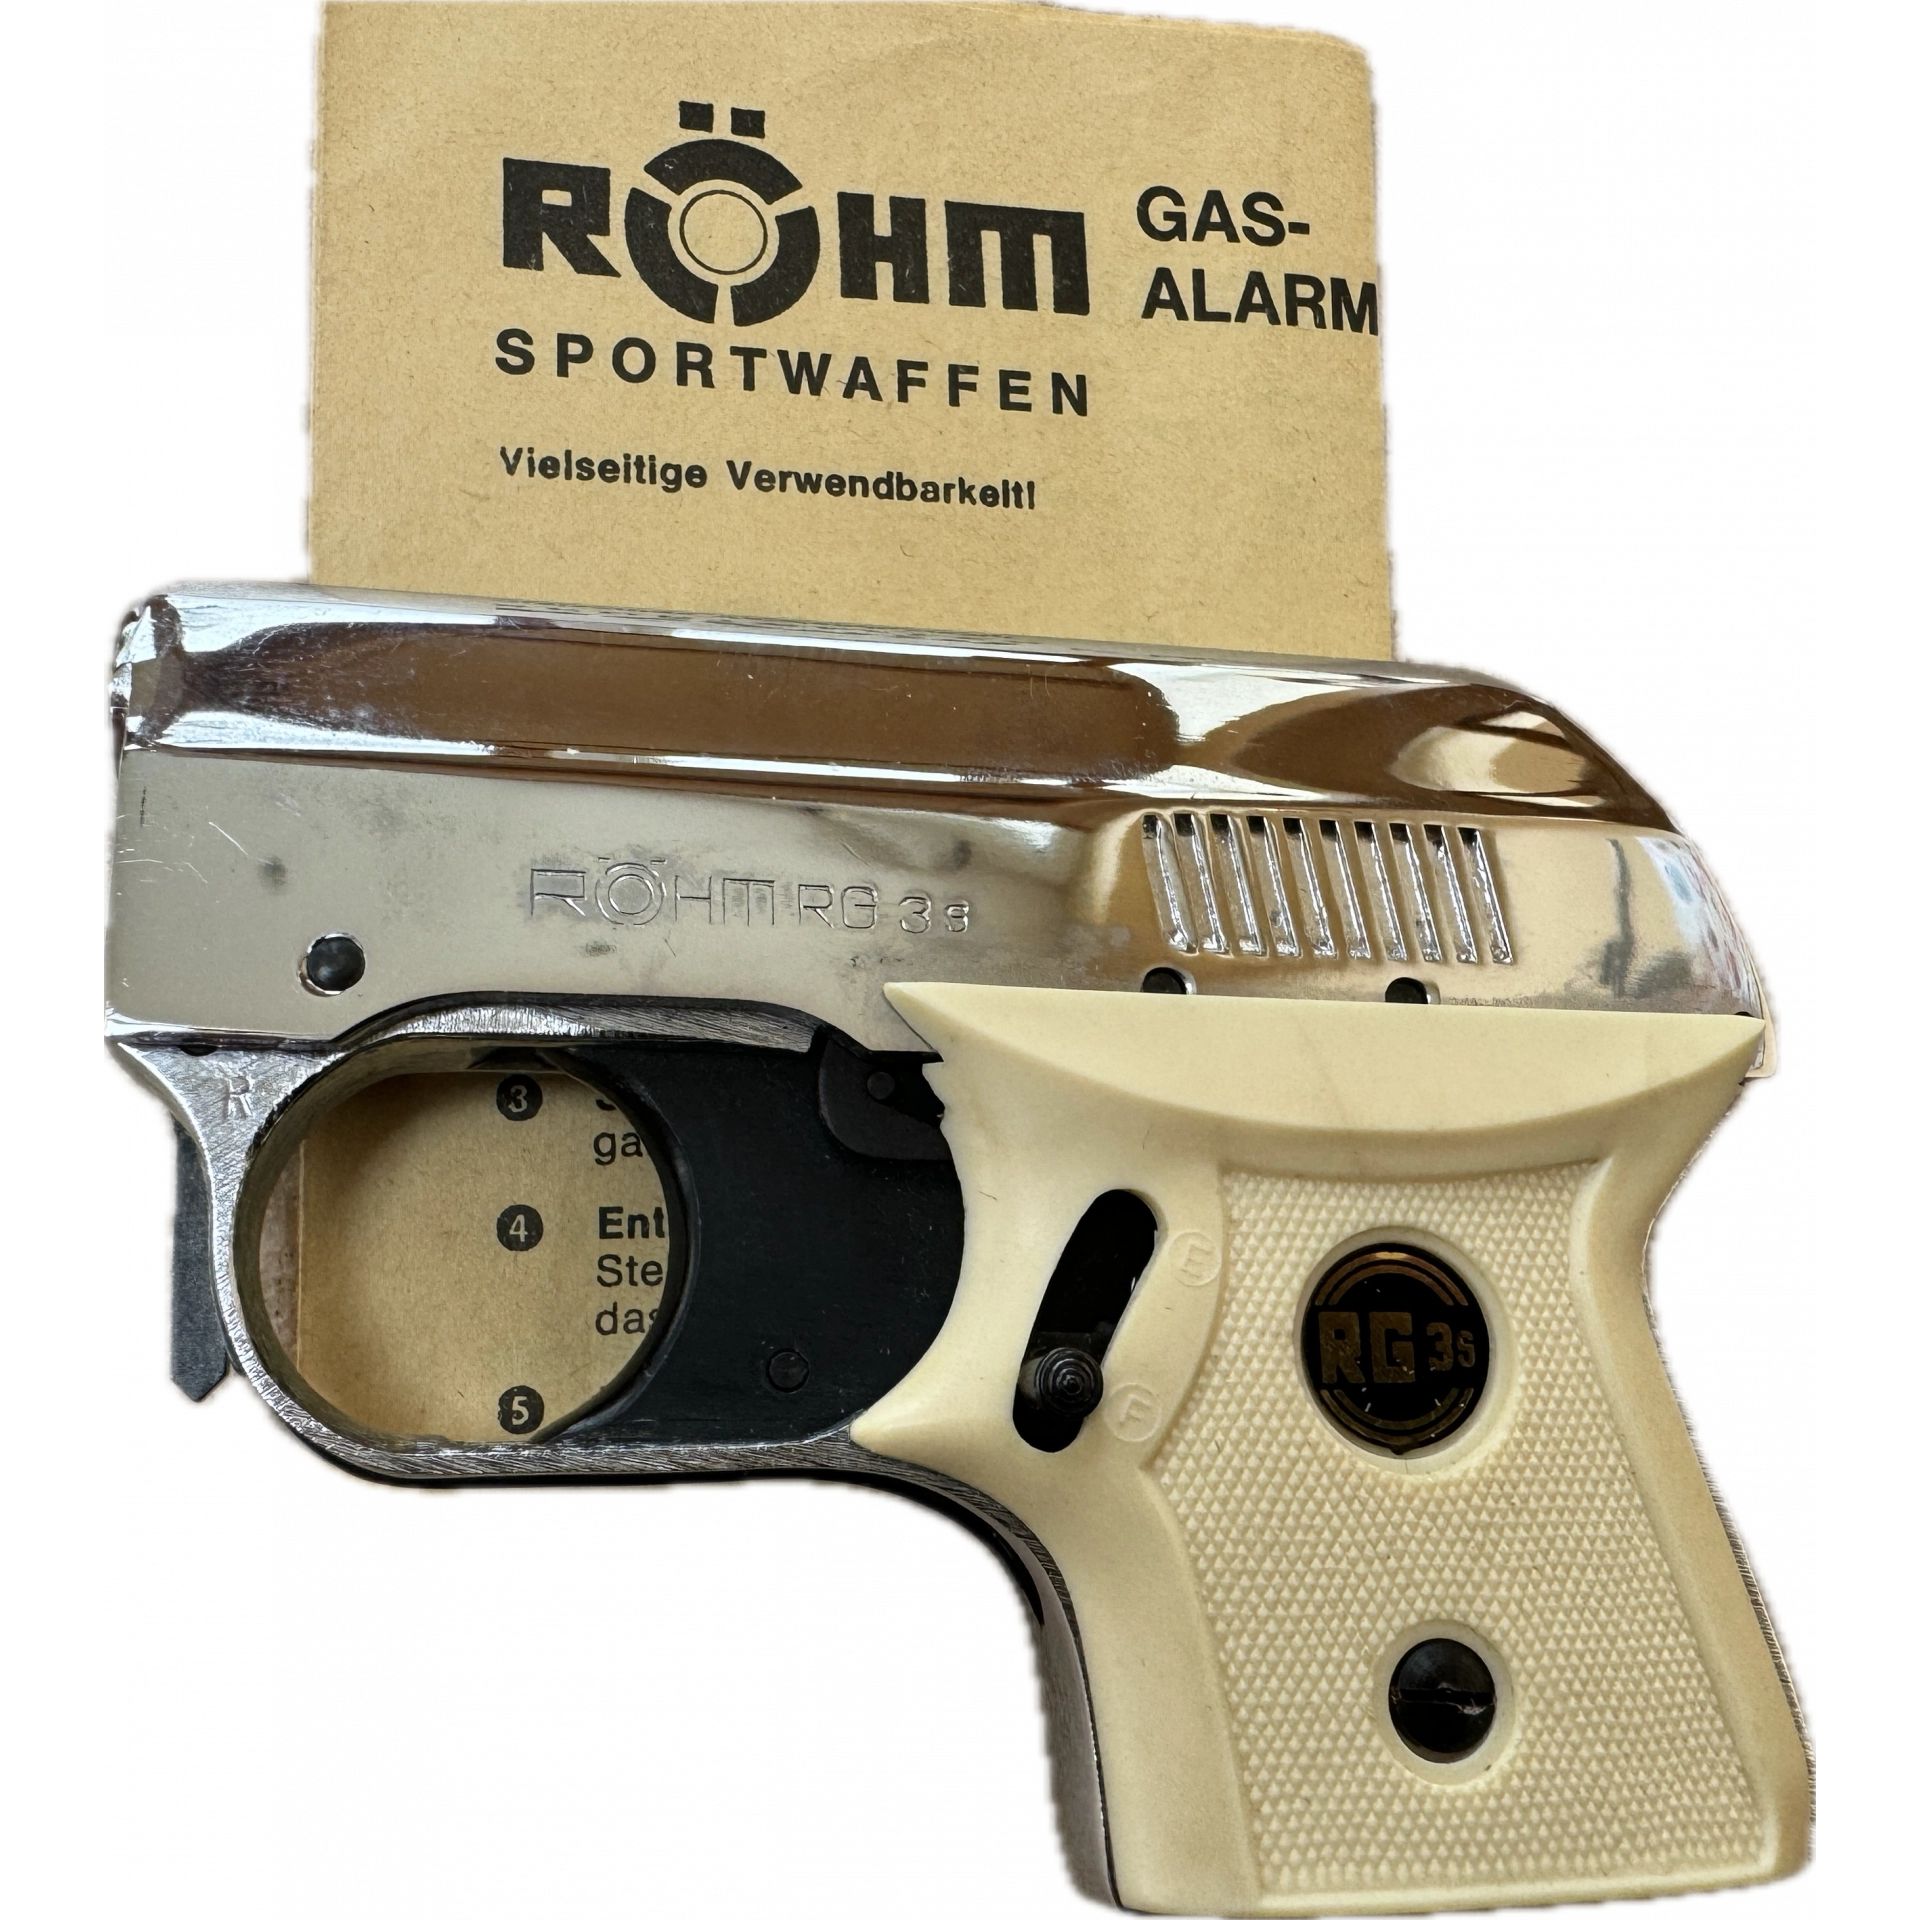 Röhm RG 3s – Neu und ungeschossen aus Sammlung